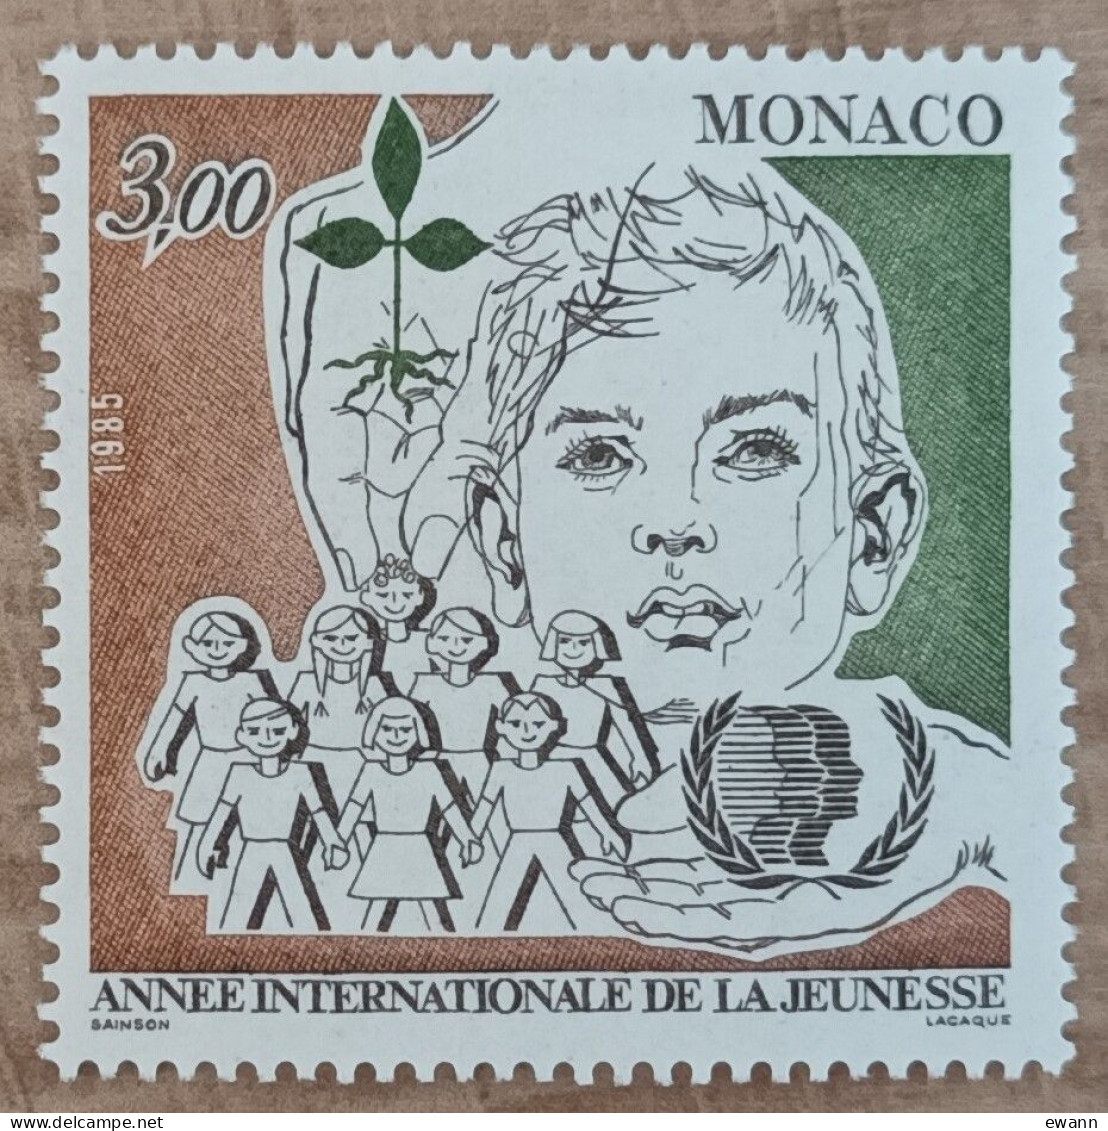 Monaco - YT N°1478 - Année Internationale De La Jeunesse - 1985 - Neuf - Neufs